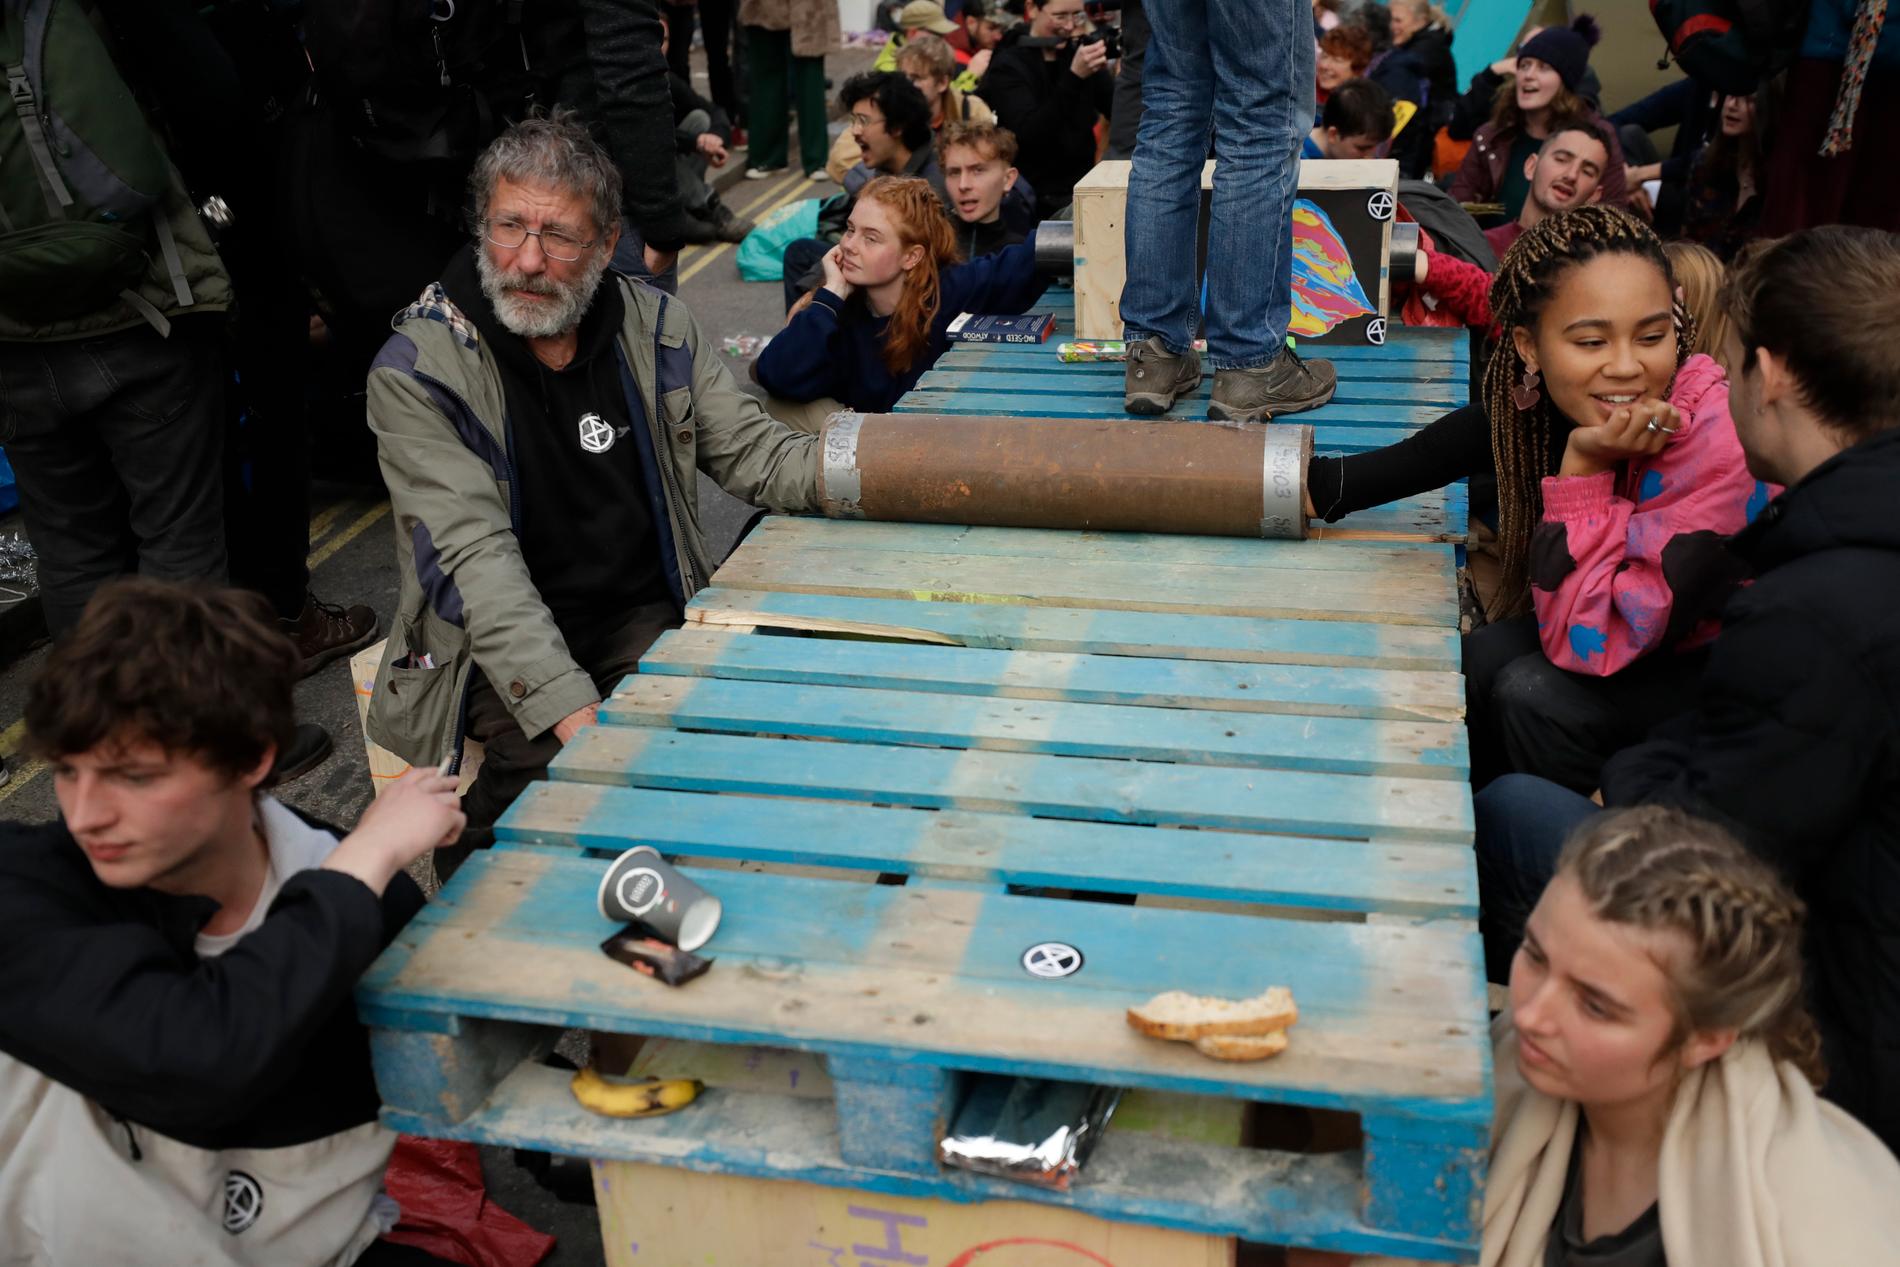 I London blockerar klimataktivister som är anhängare av Extinction Rebellion en gata genom att låsa samman sina armar med varandra. Bilden är från den 9 oktober.